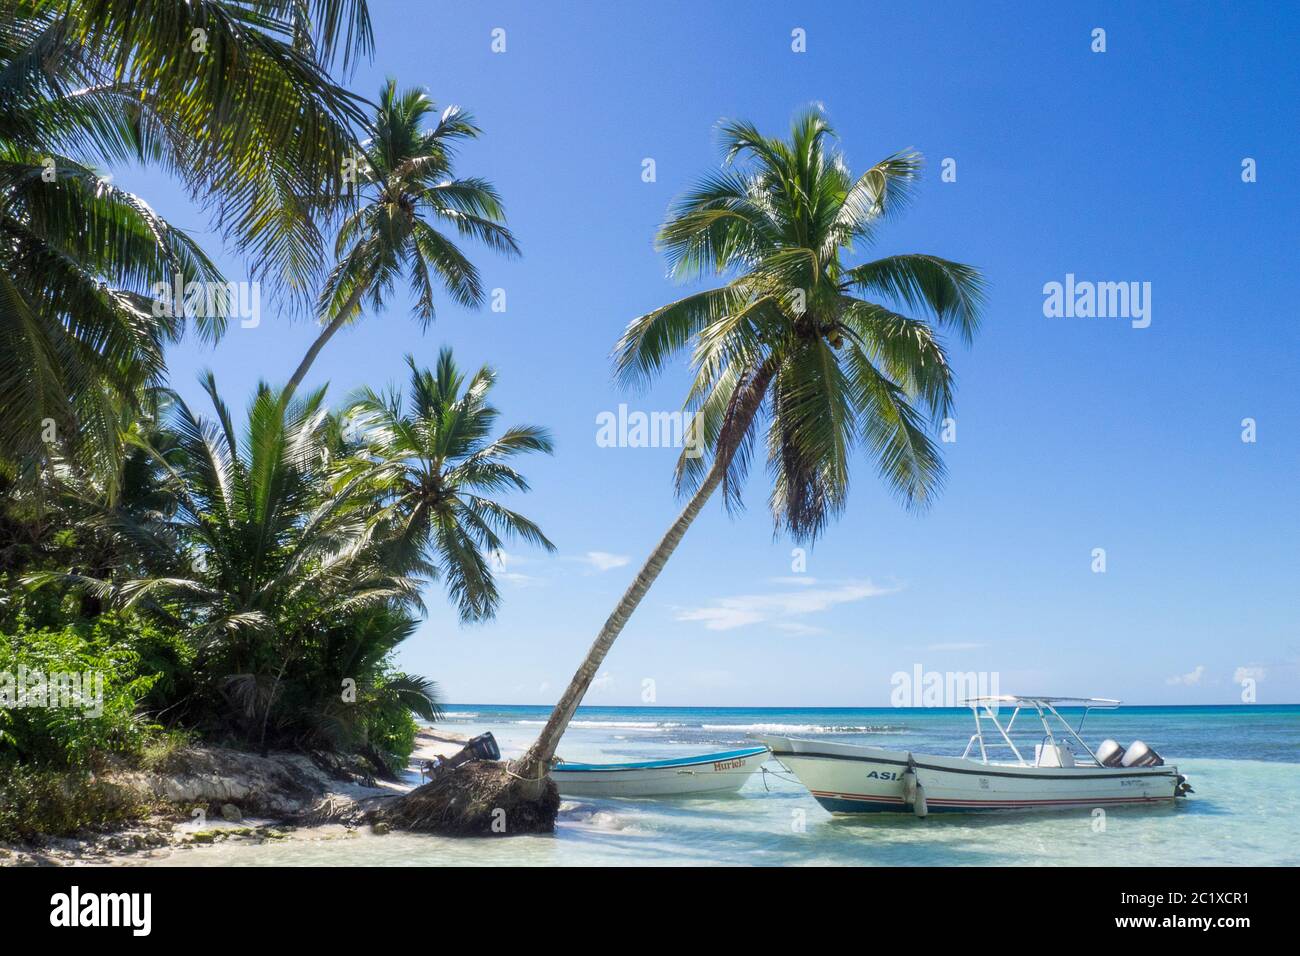 Karibik, Dominikanische Republik - Saona Island am Gato Beach Stockfoto